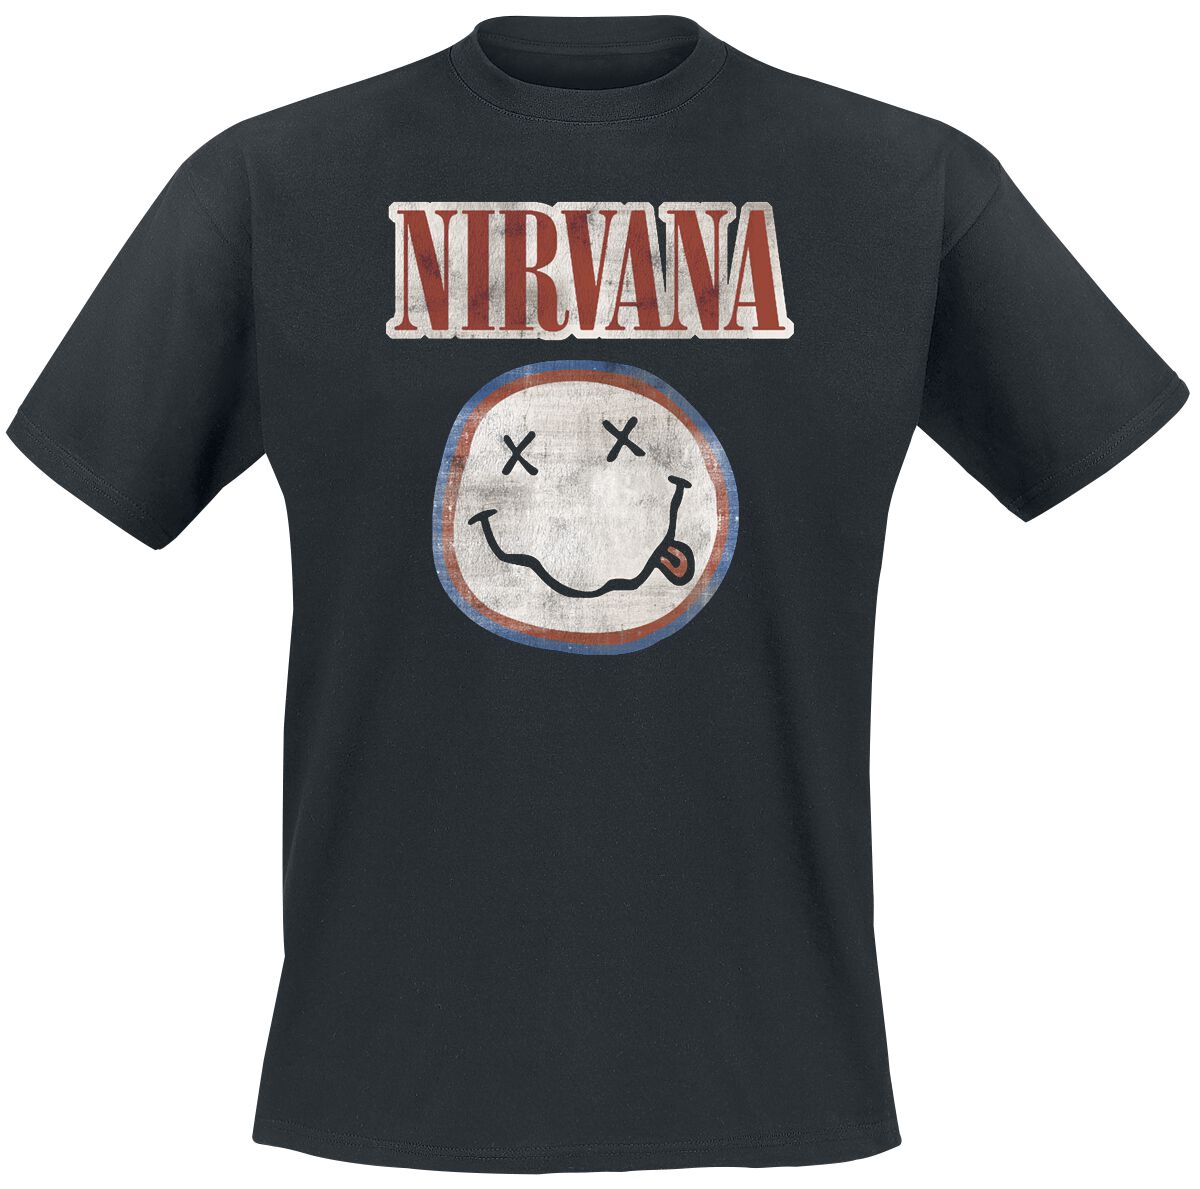 Nirvana T-Shirt - Distressed Logo - S bis XXL - für Männer - Größe XXL - schwarz  - Lizenziertes Merchandise!